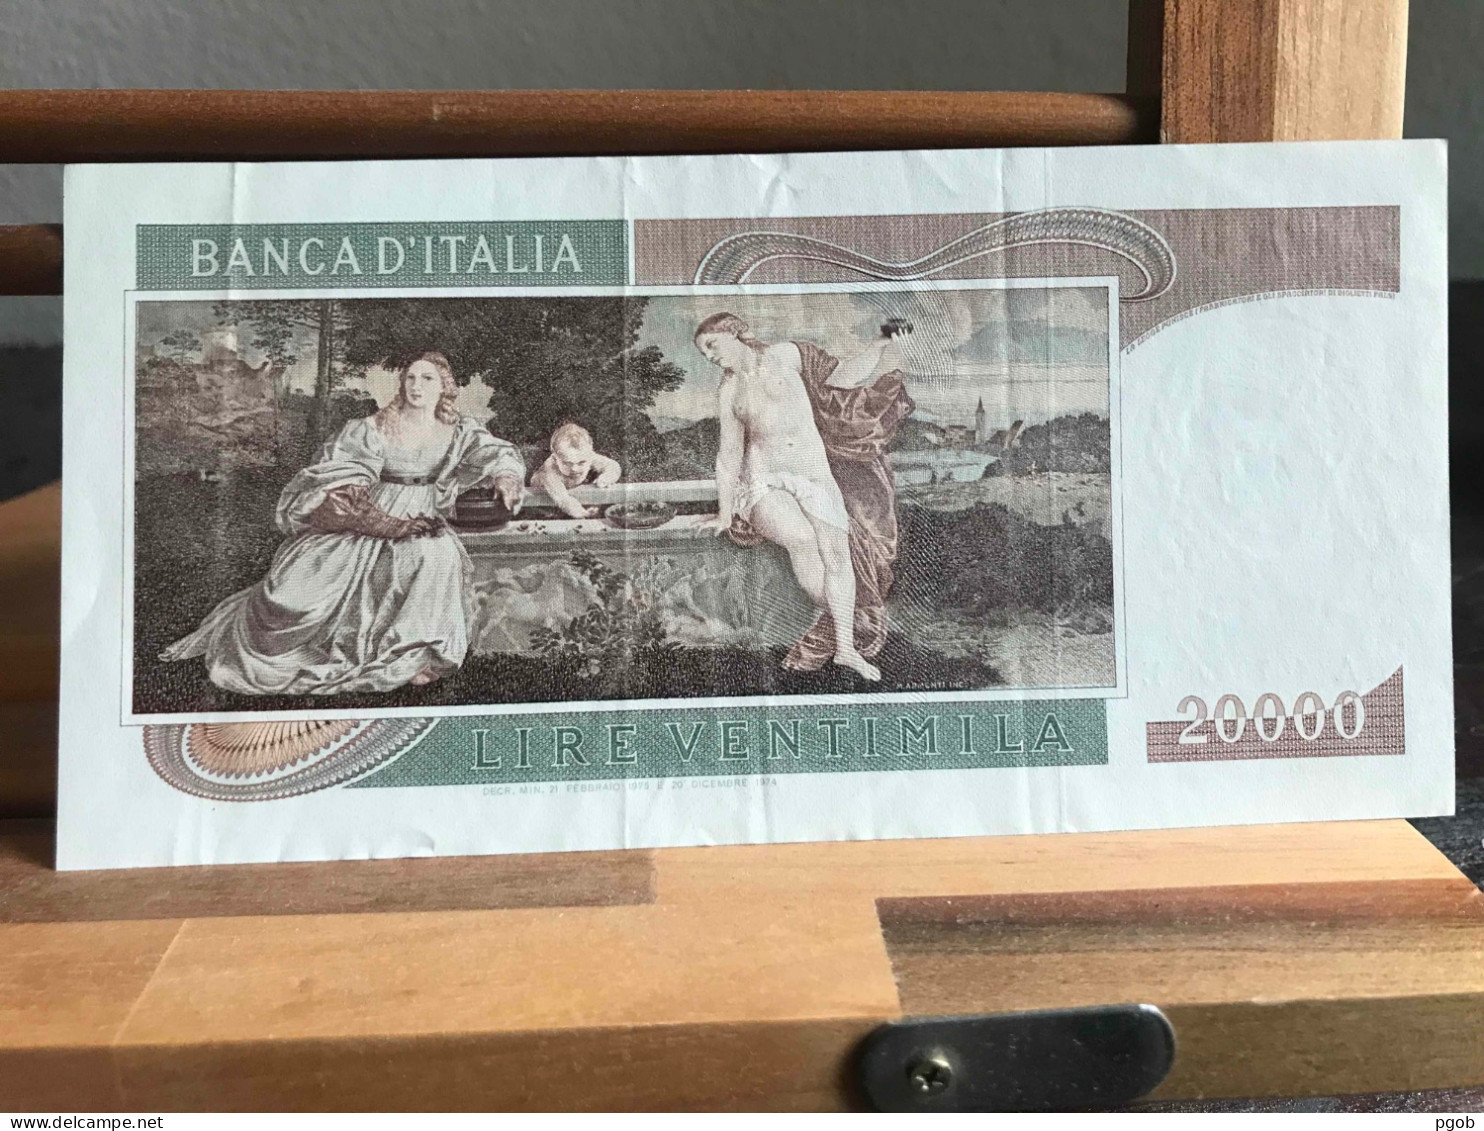 Banconota Da Lire 20000 Tiziano - 20000 Lire